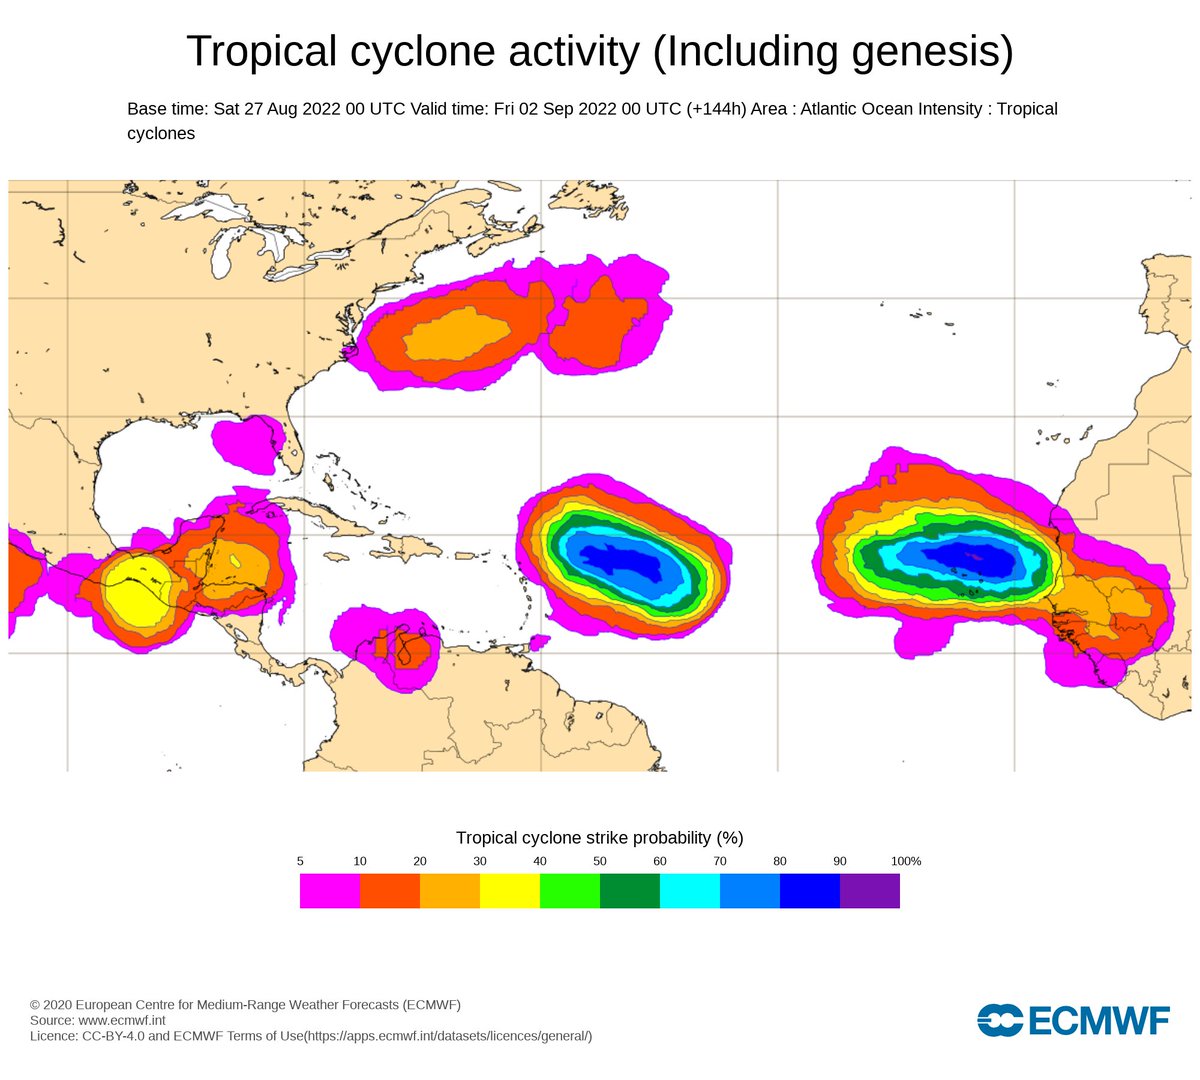 Alors que le début de saison cyclonique est exceptionnellement calme dans l'Atlantique, tout cela pourrait changer dès les 1ers jours de septembre avec plusieurs zones à surveiller en mer des Caraïbes et sur l'Atlantique tropical avec fortes proba d'activité cyclonique. 